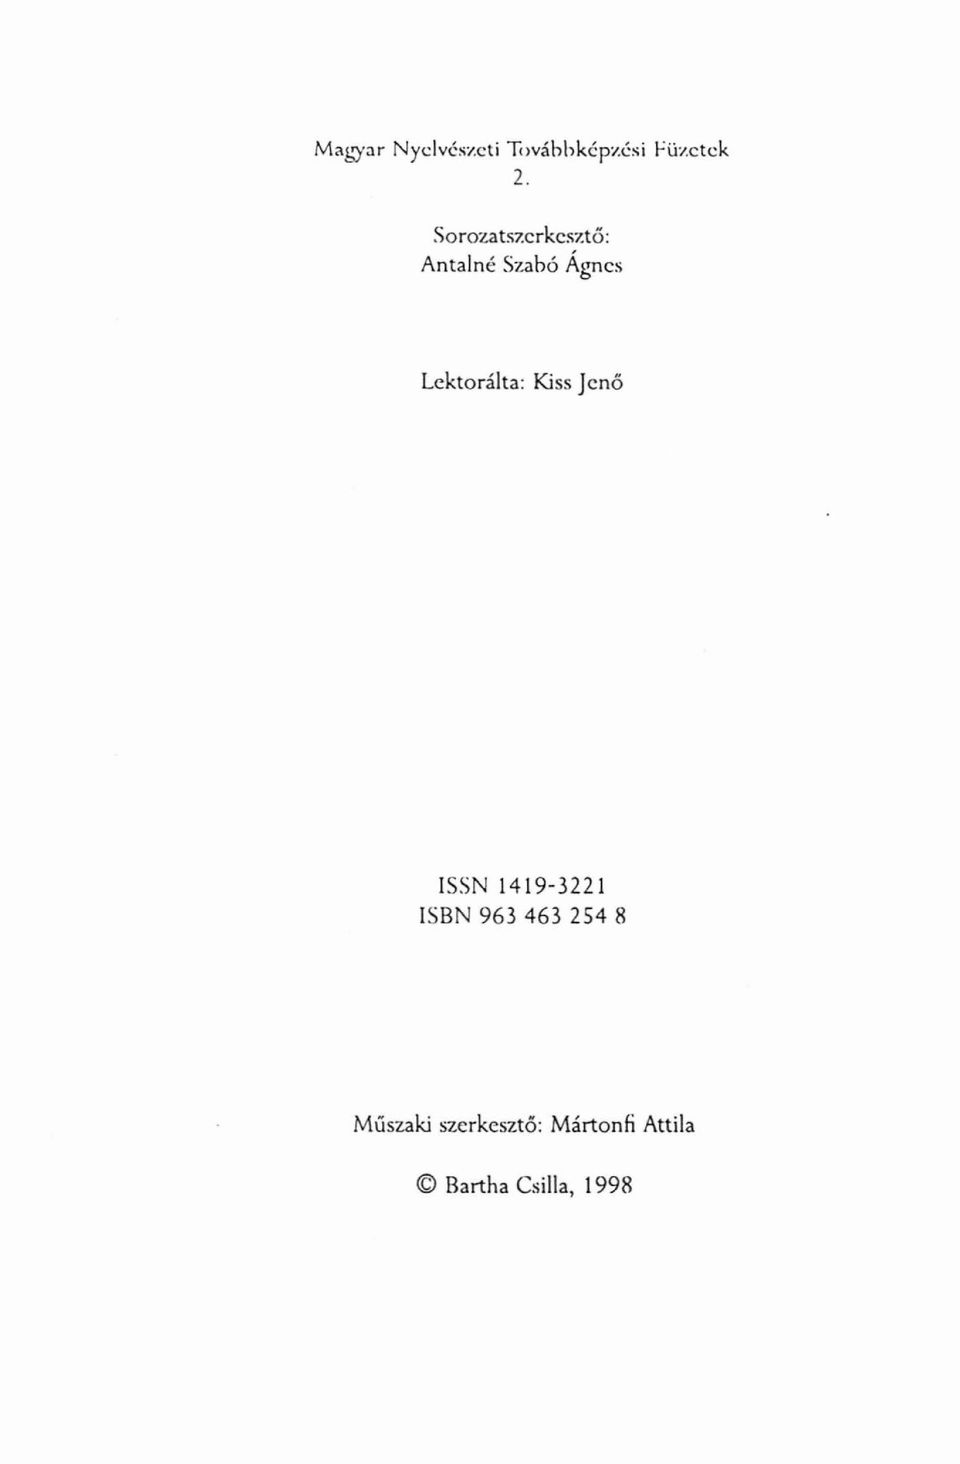 Lektorálta: Kiss Jenő ISSN 1419-3221 ISBN 963